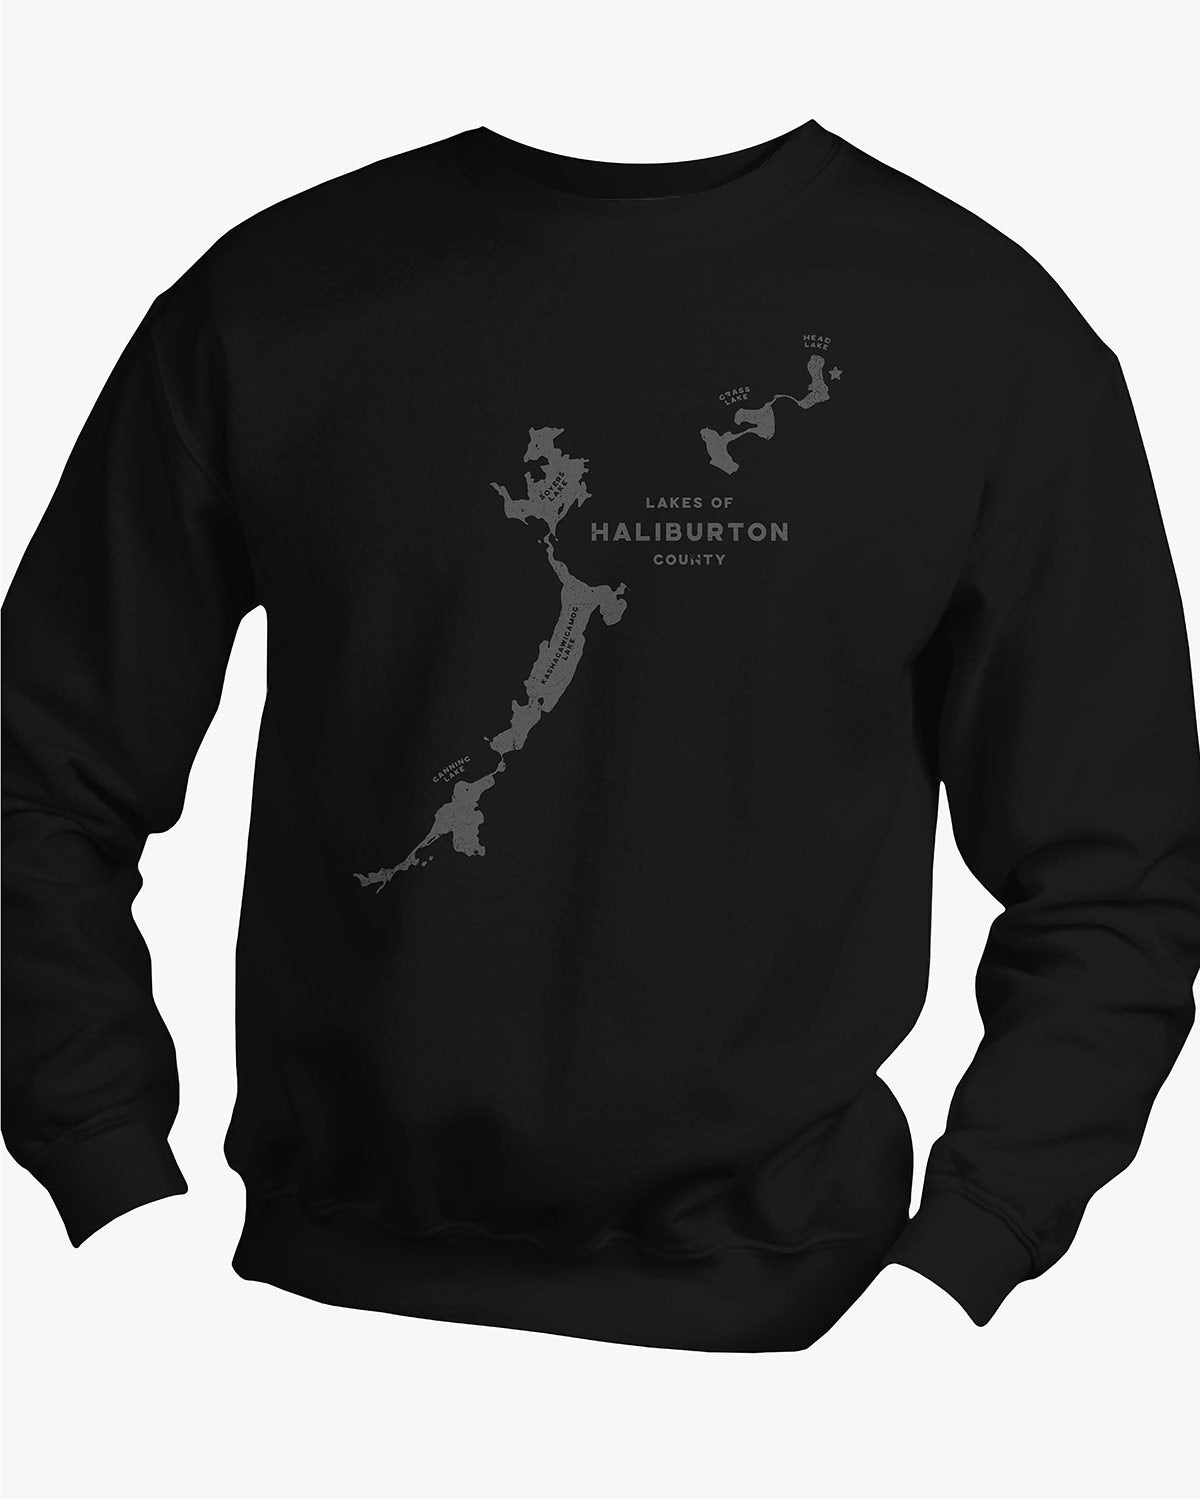 Lake Chain One - Haliburton - Sweater